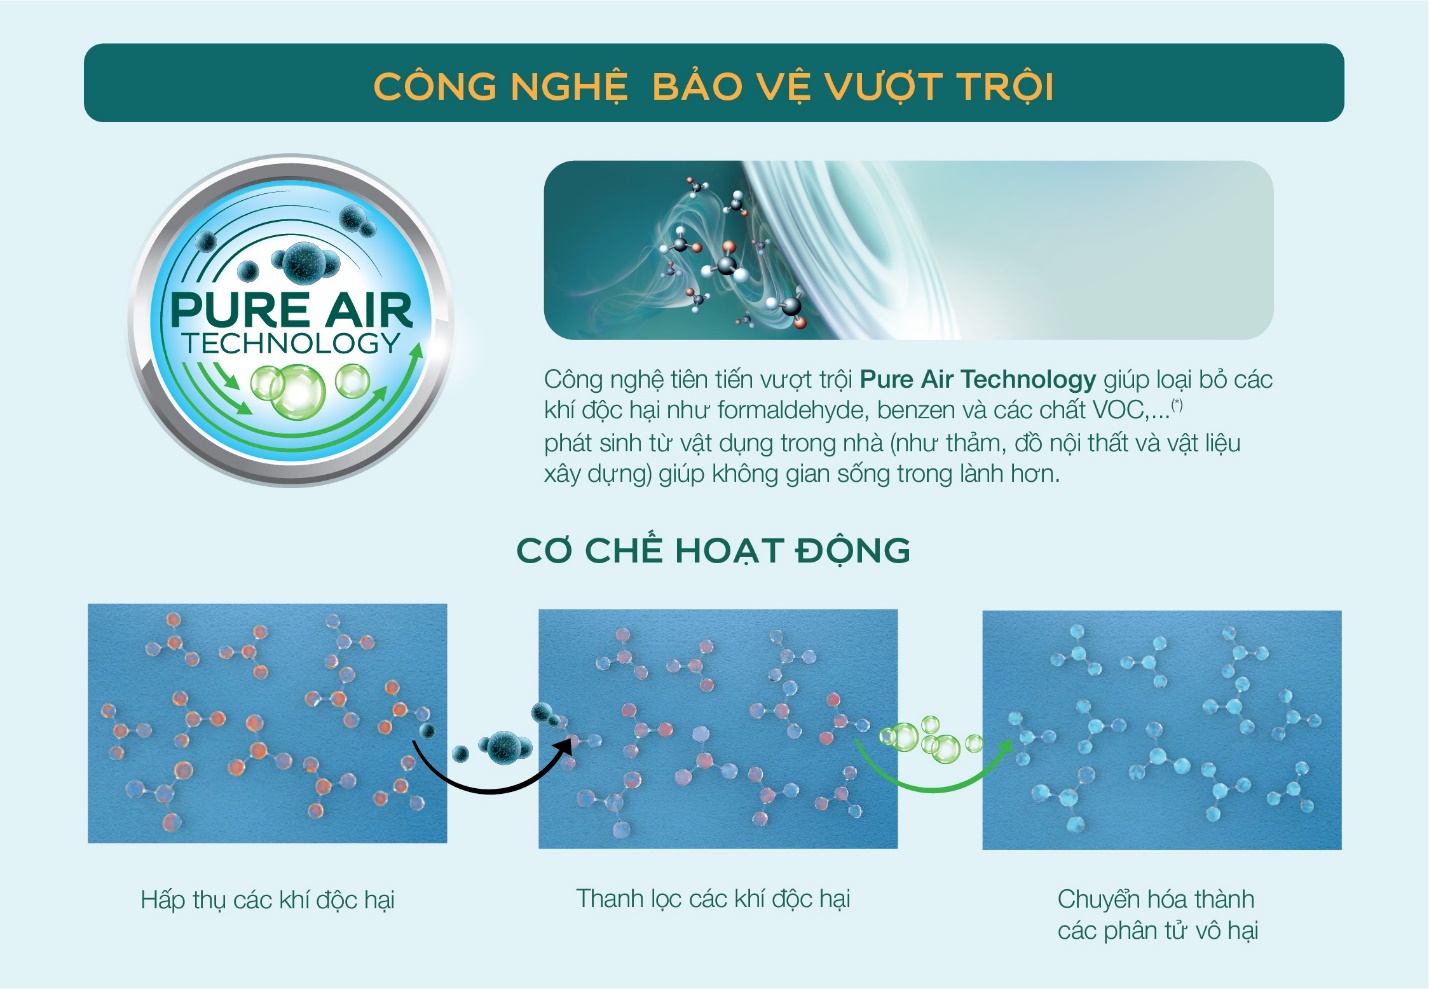 Cơ chế hoạt động ưu việt của Air Clean giúp nâng cao chất lượng không khí trong nhà